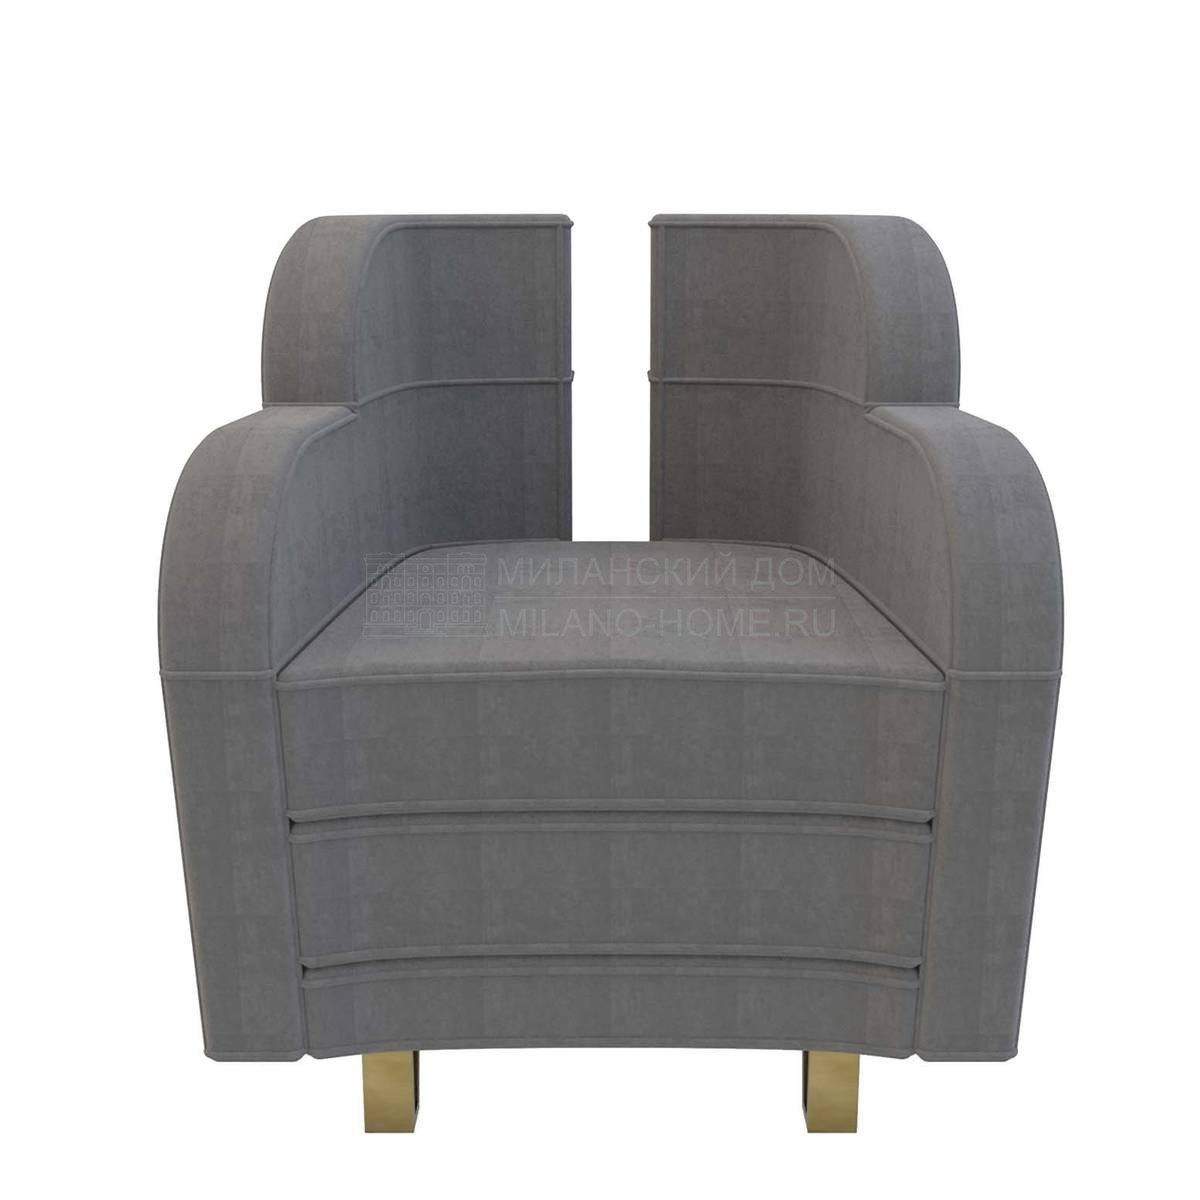 Кресло Wing armchair из Италии фабрики MARIONI